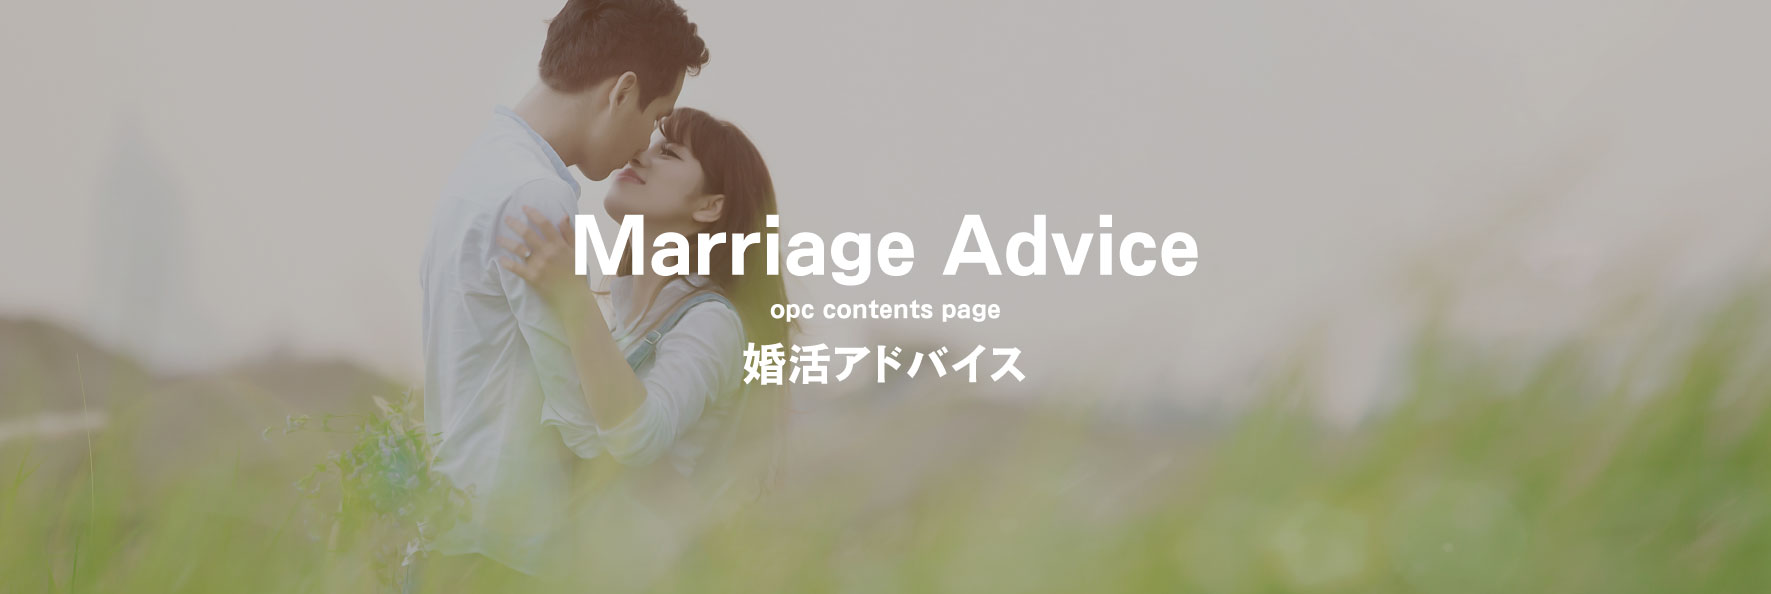 大分で25年の実績、OPCの婚活パーティー婚活OPCMarriageAdvice婚活アドバイス